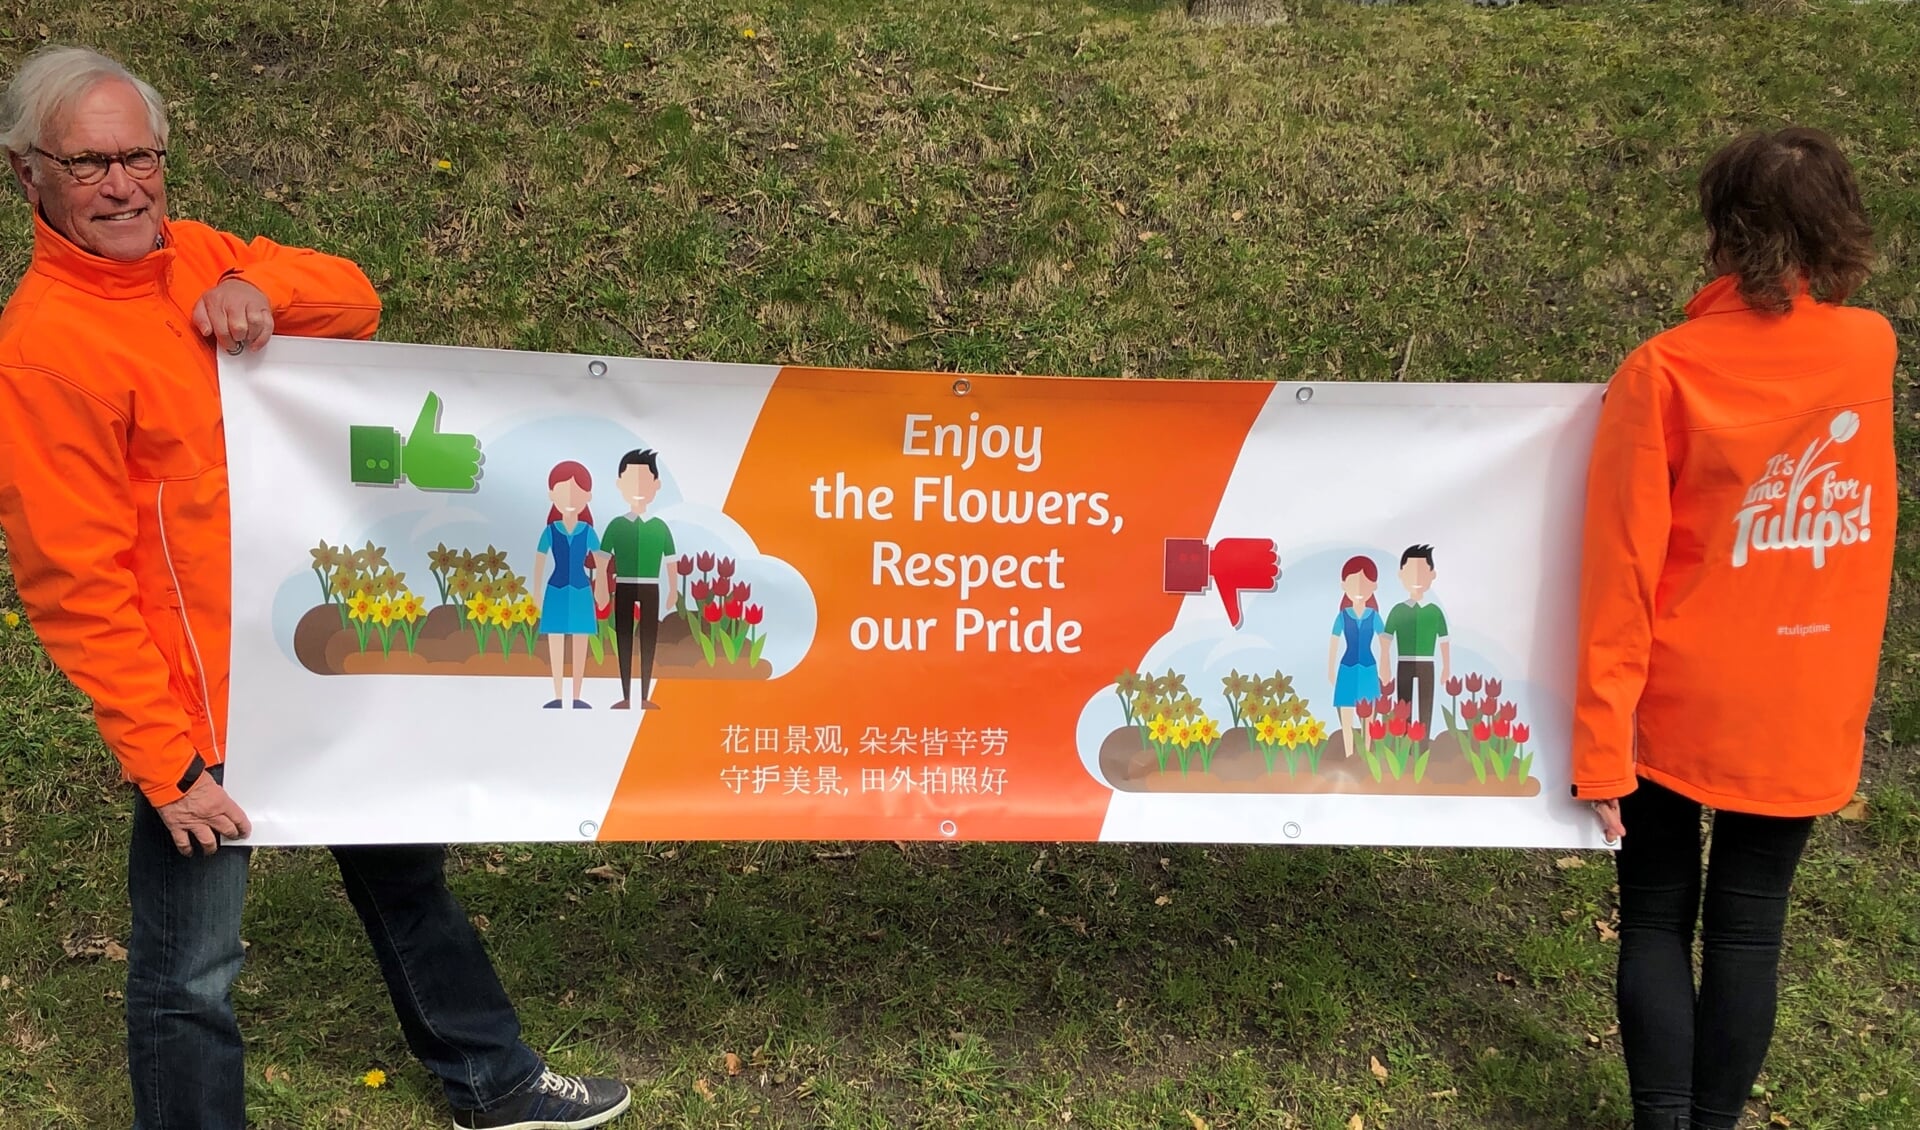 Deze banner vraagt de toeristen om respectvol genieten van de bollenvelden. | Foto: PR